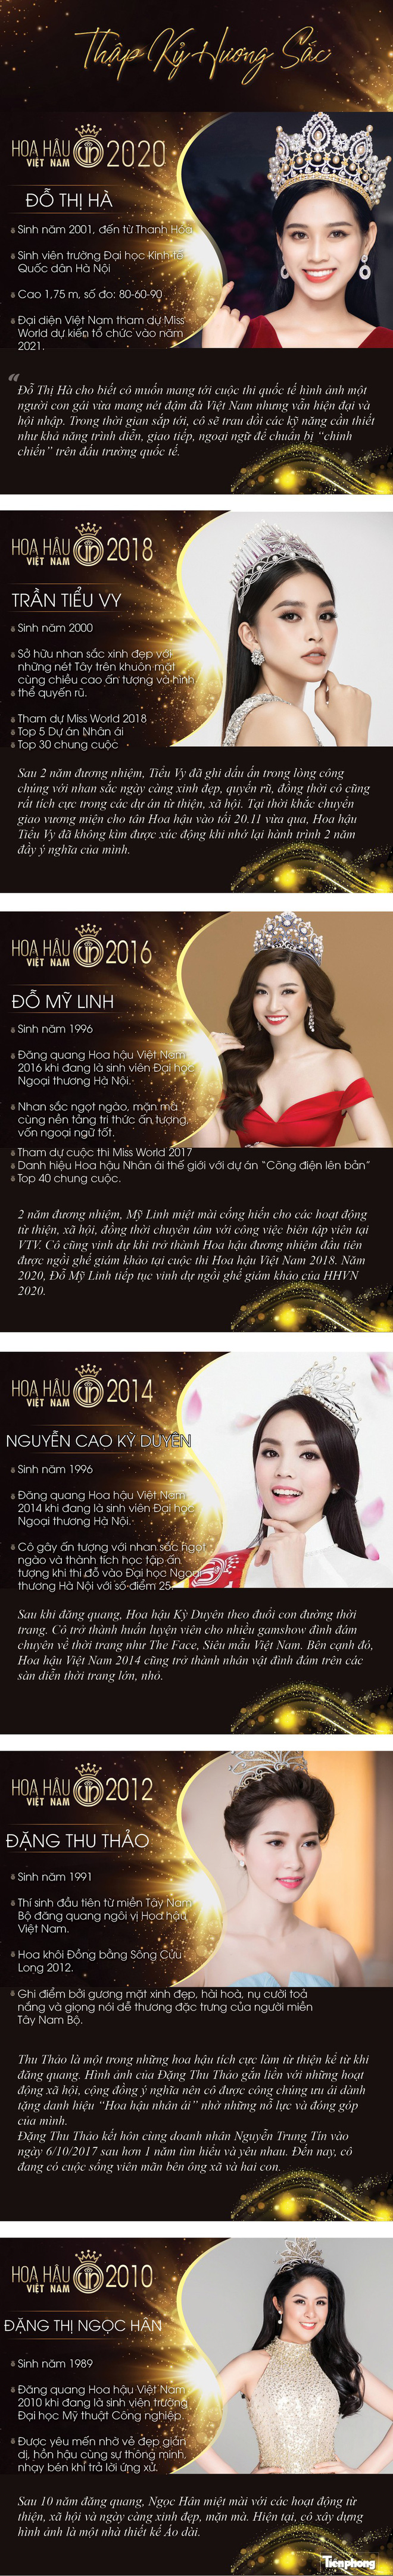 Nhìn lại nhan sắc rực rỡ của 6 Hoa hậu Việt Nam trong thập kỷ hương sắc 2010-2020 - Ảnh 1.